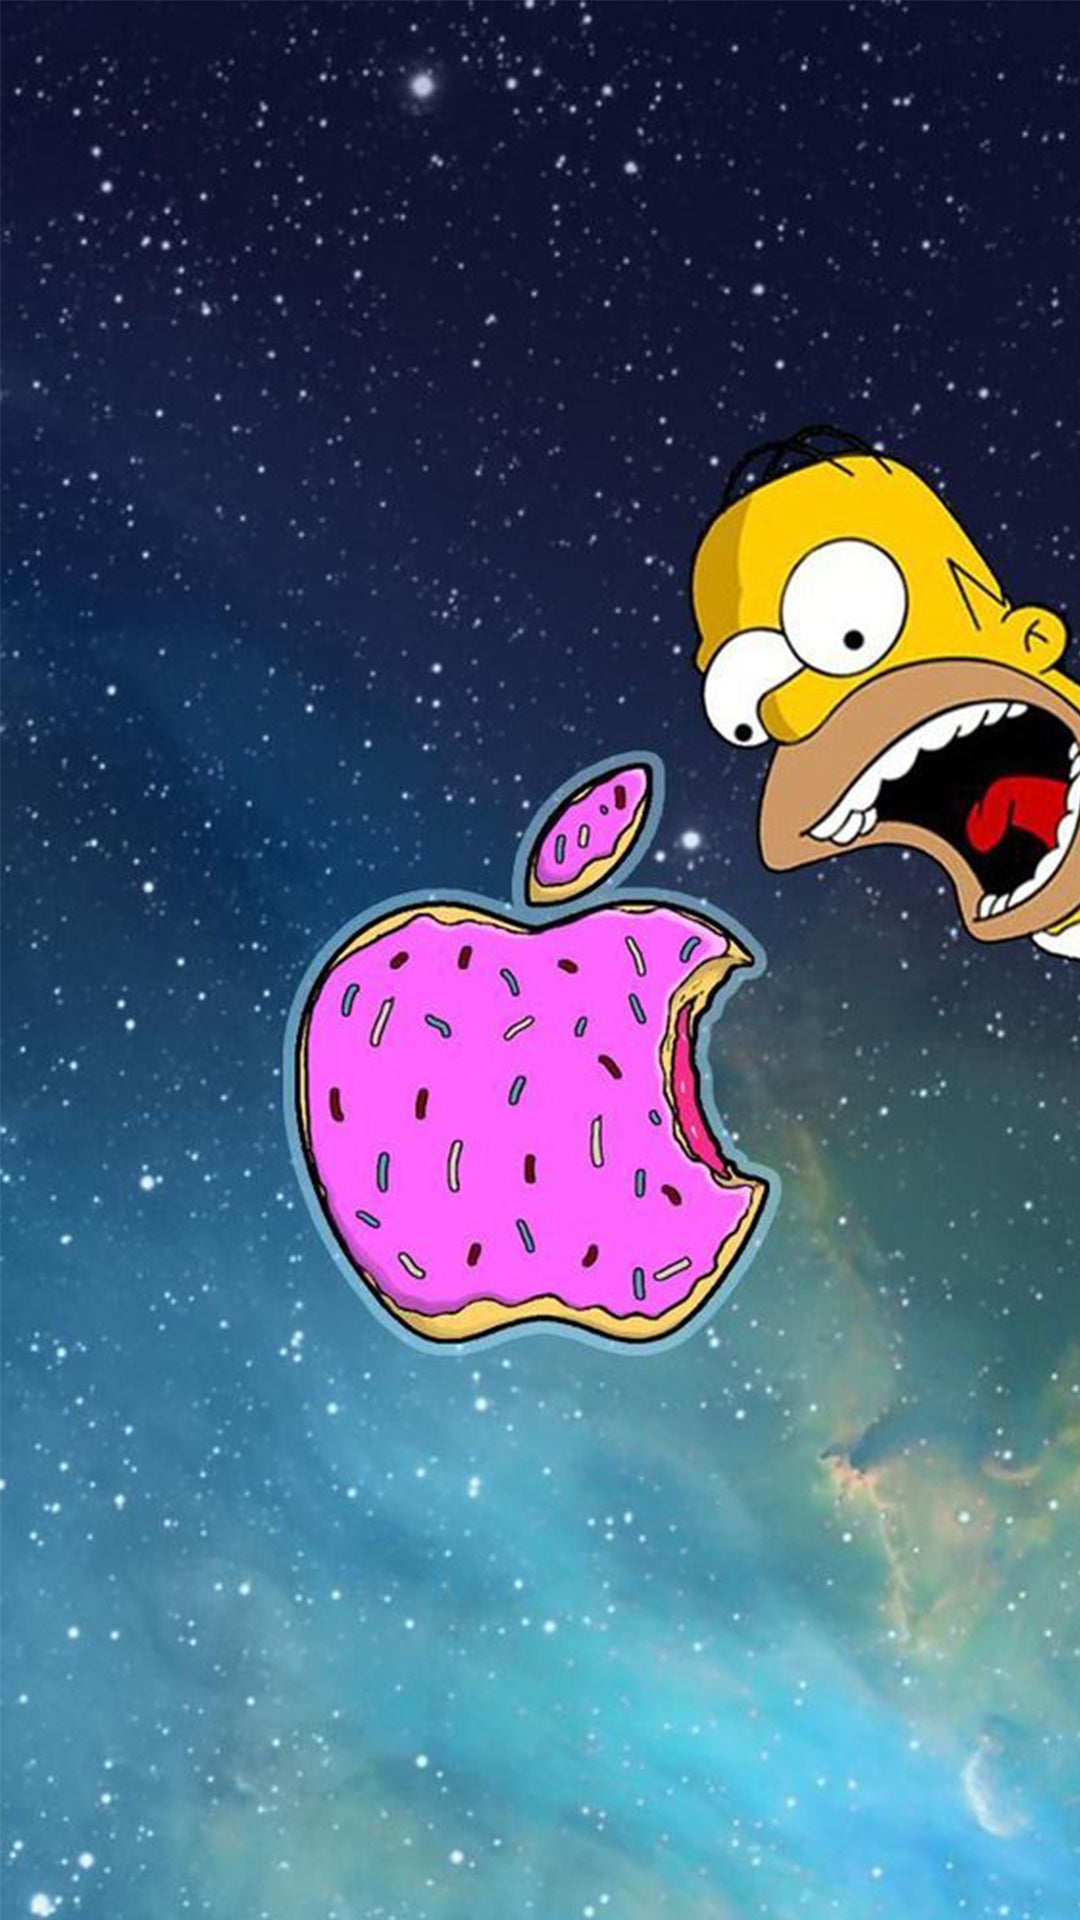 Le logo d’Apple en version donut sur fond étoilé. Homer tente de la manger avec la bouche grande ouverte.